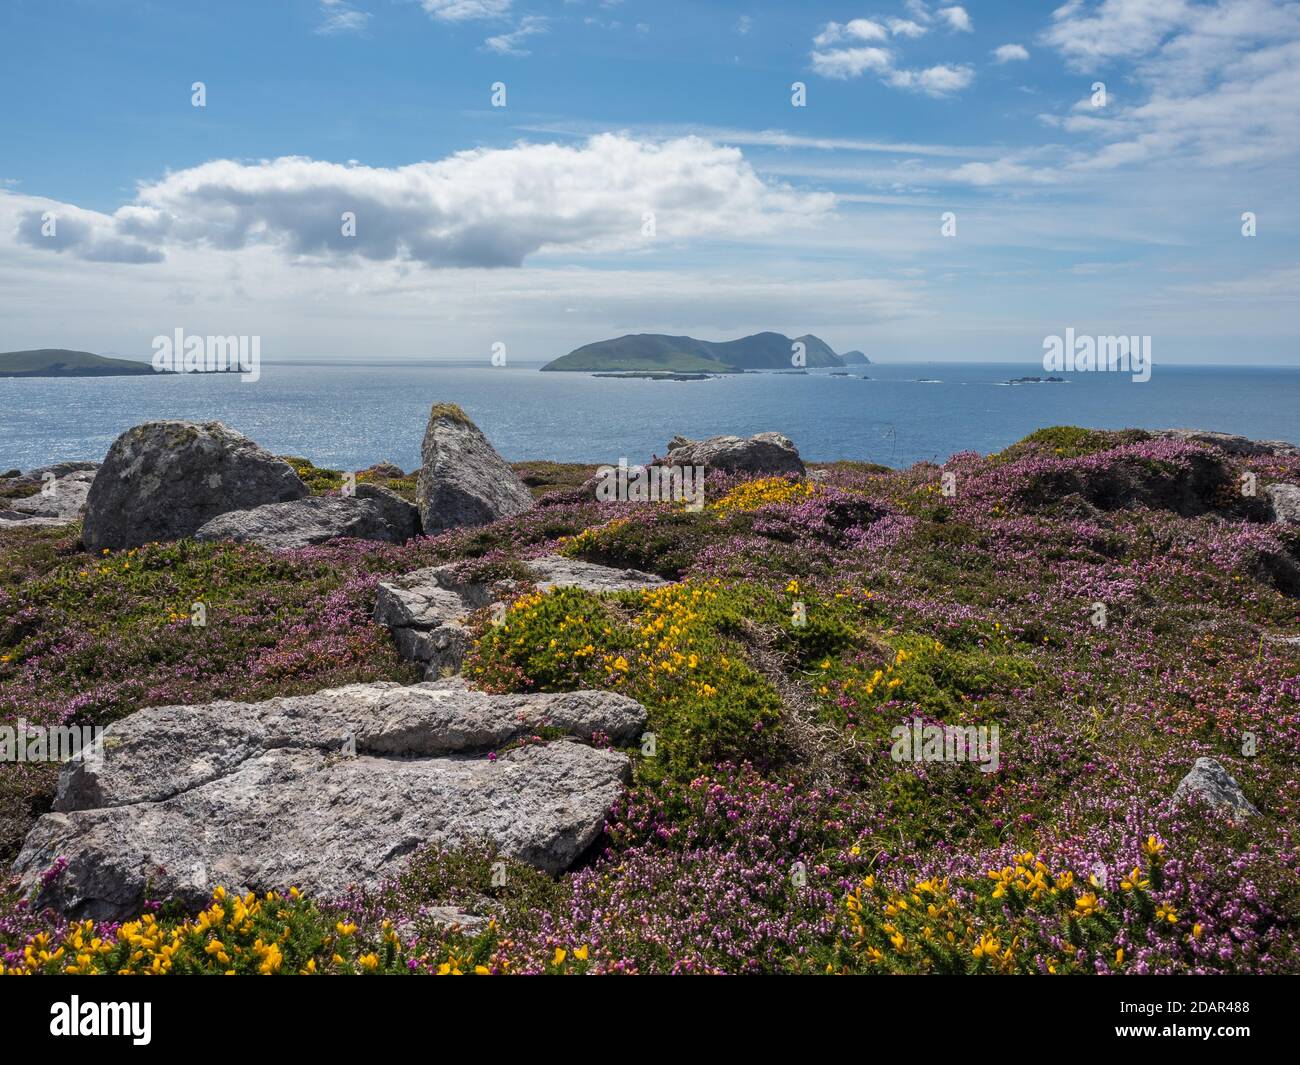 Floraison de bruyère et (Genista), derrière elle, Blasket Islands, comté de Kerry, Irlande Banque D'Images